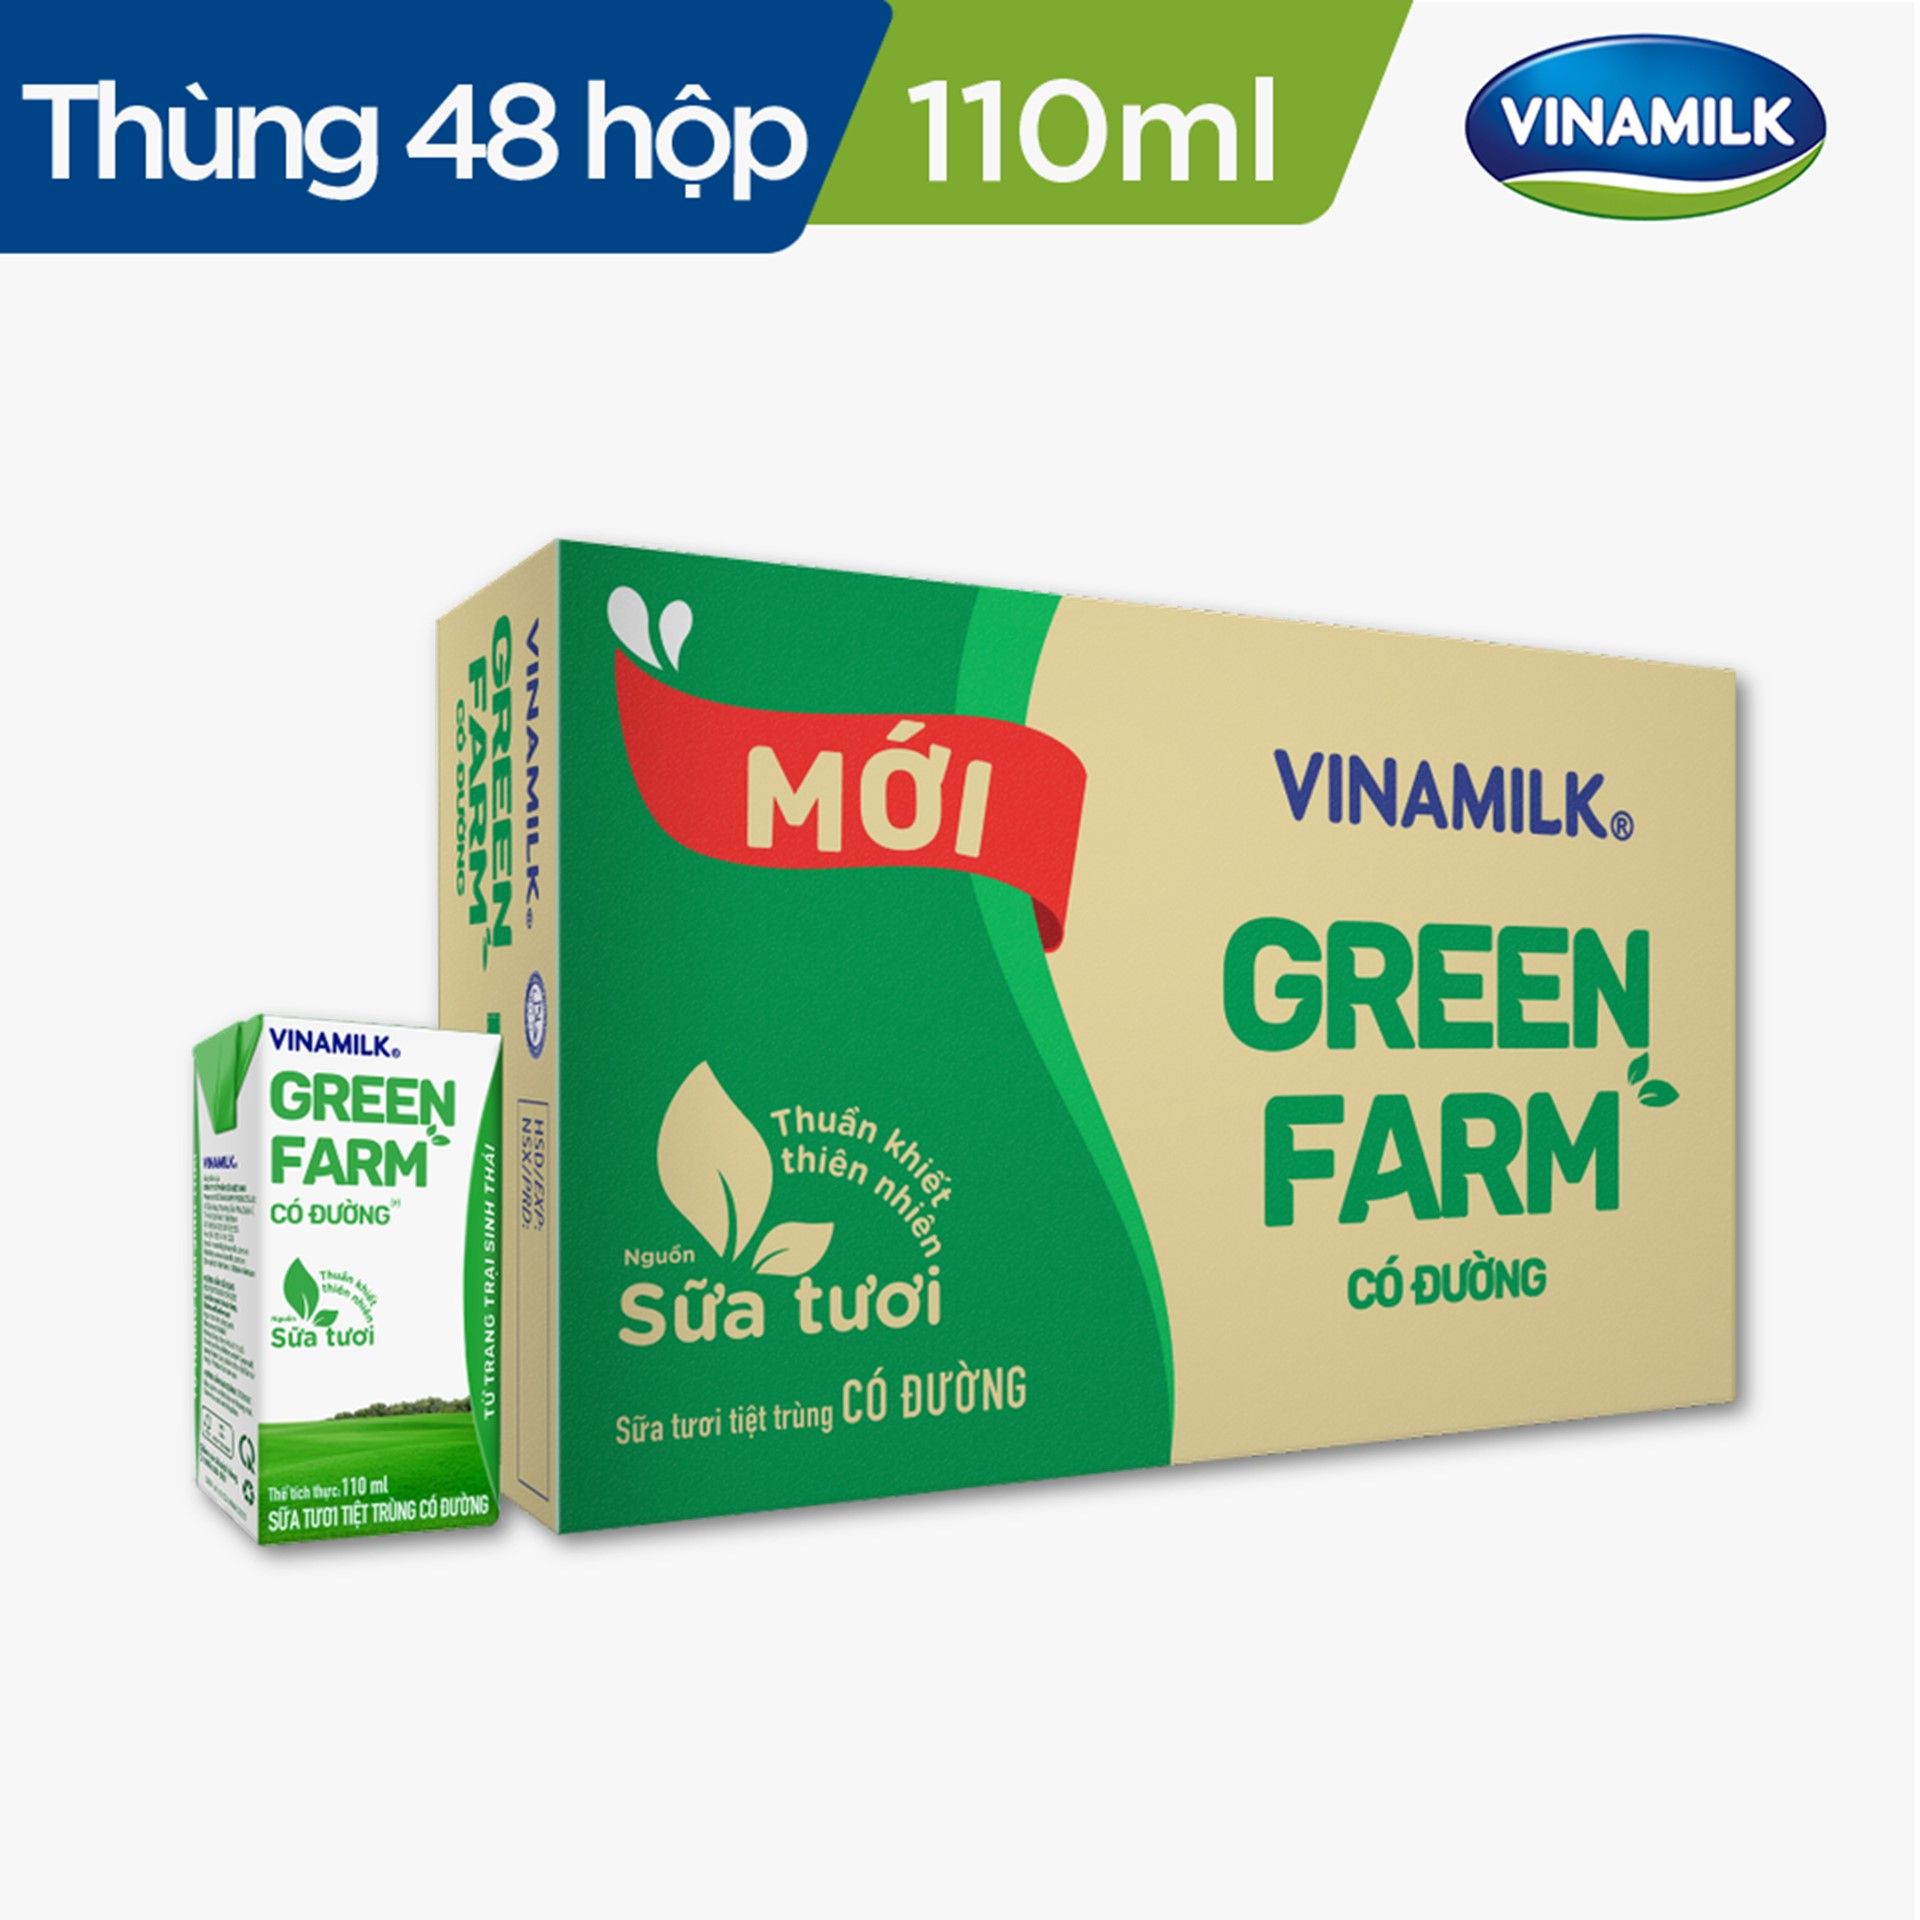 Sữa Tươi Tiệt Trùng Vinamilk Green Farm Có đường - Thùng 48 hộp 110ml